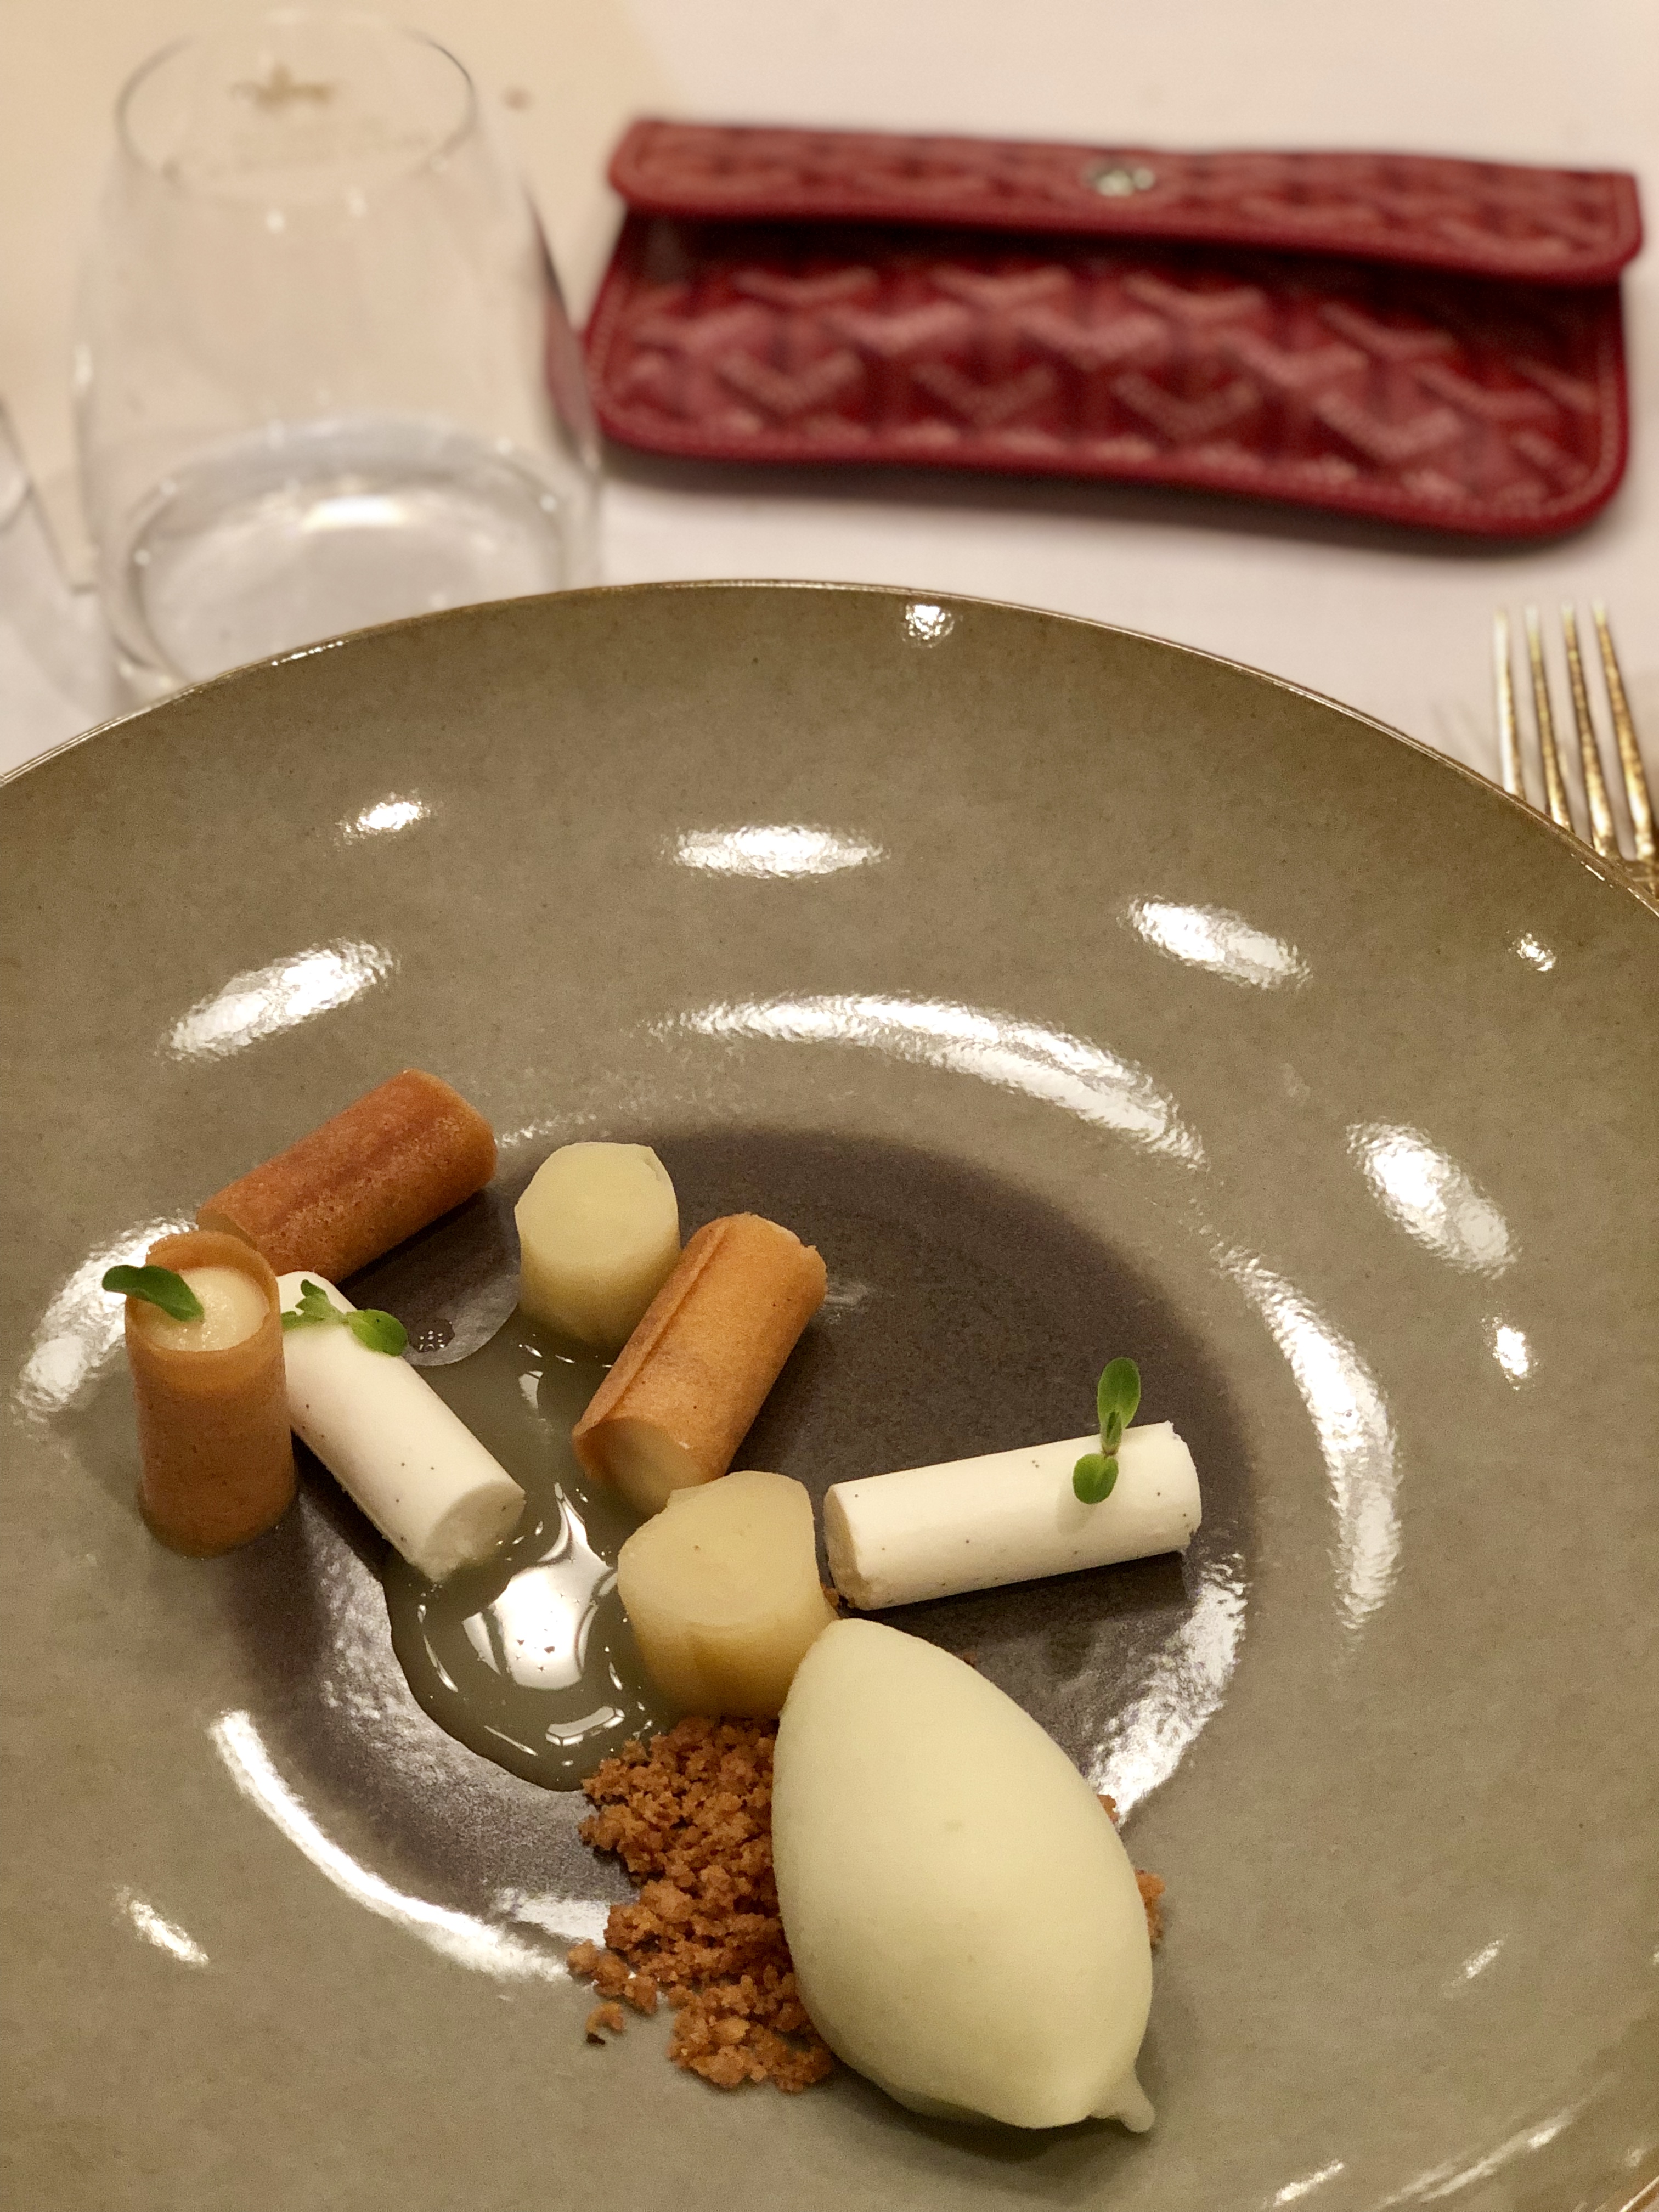 dessert - table du connetable - 1 etoile michelin - chantilly - auberge du jeu de paume - hotel 5 etoiles - restaurant gastronomique - julien lucas